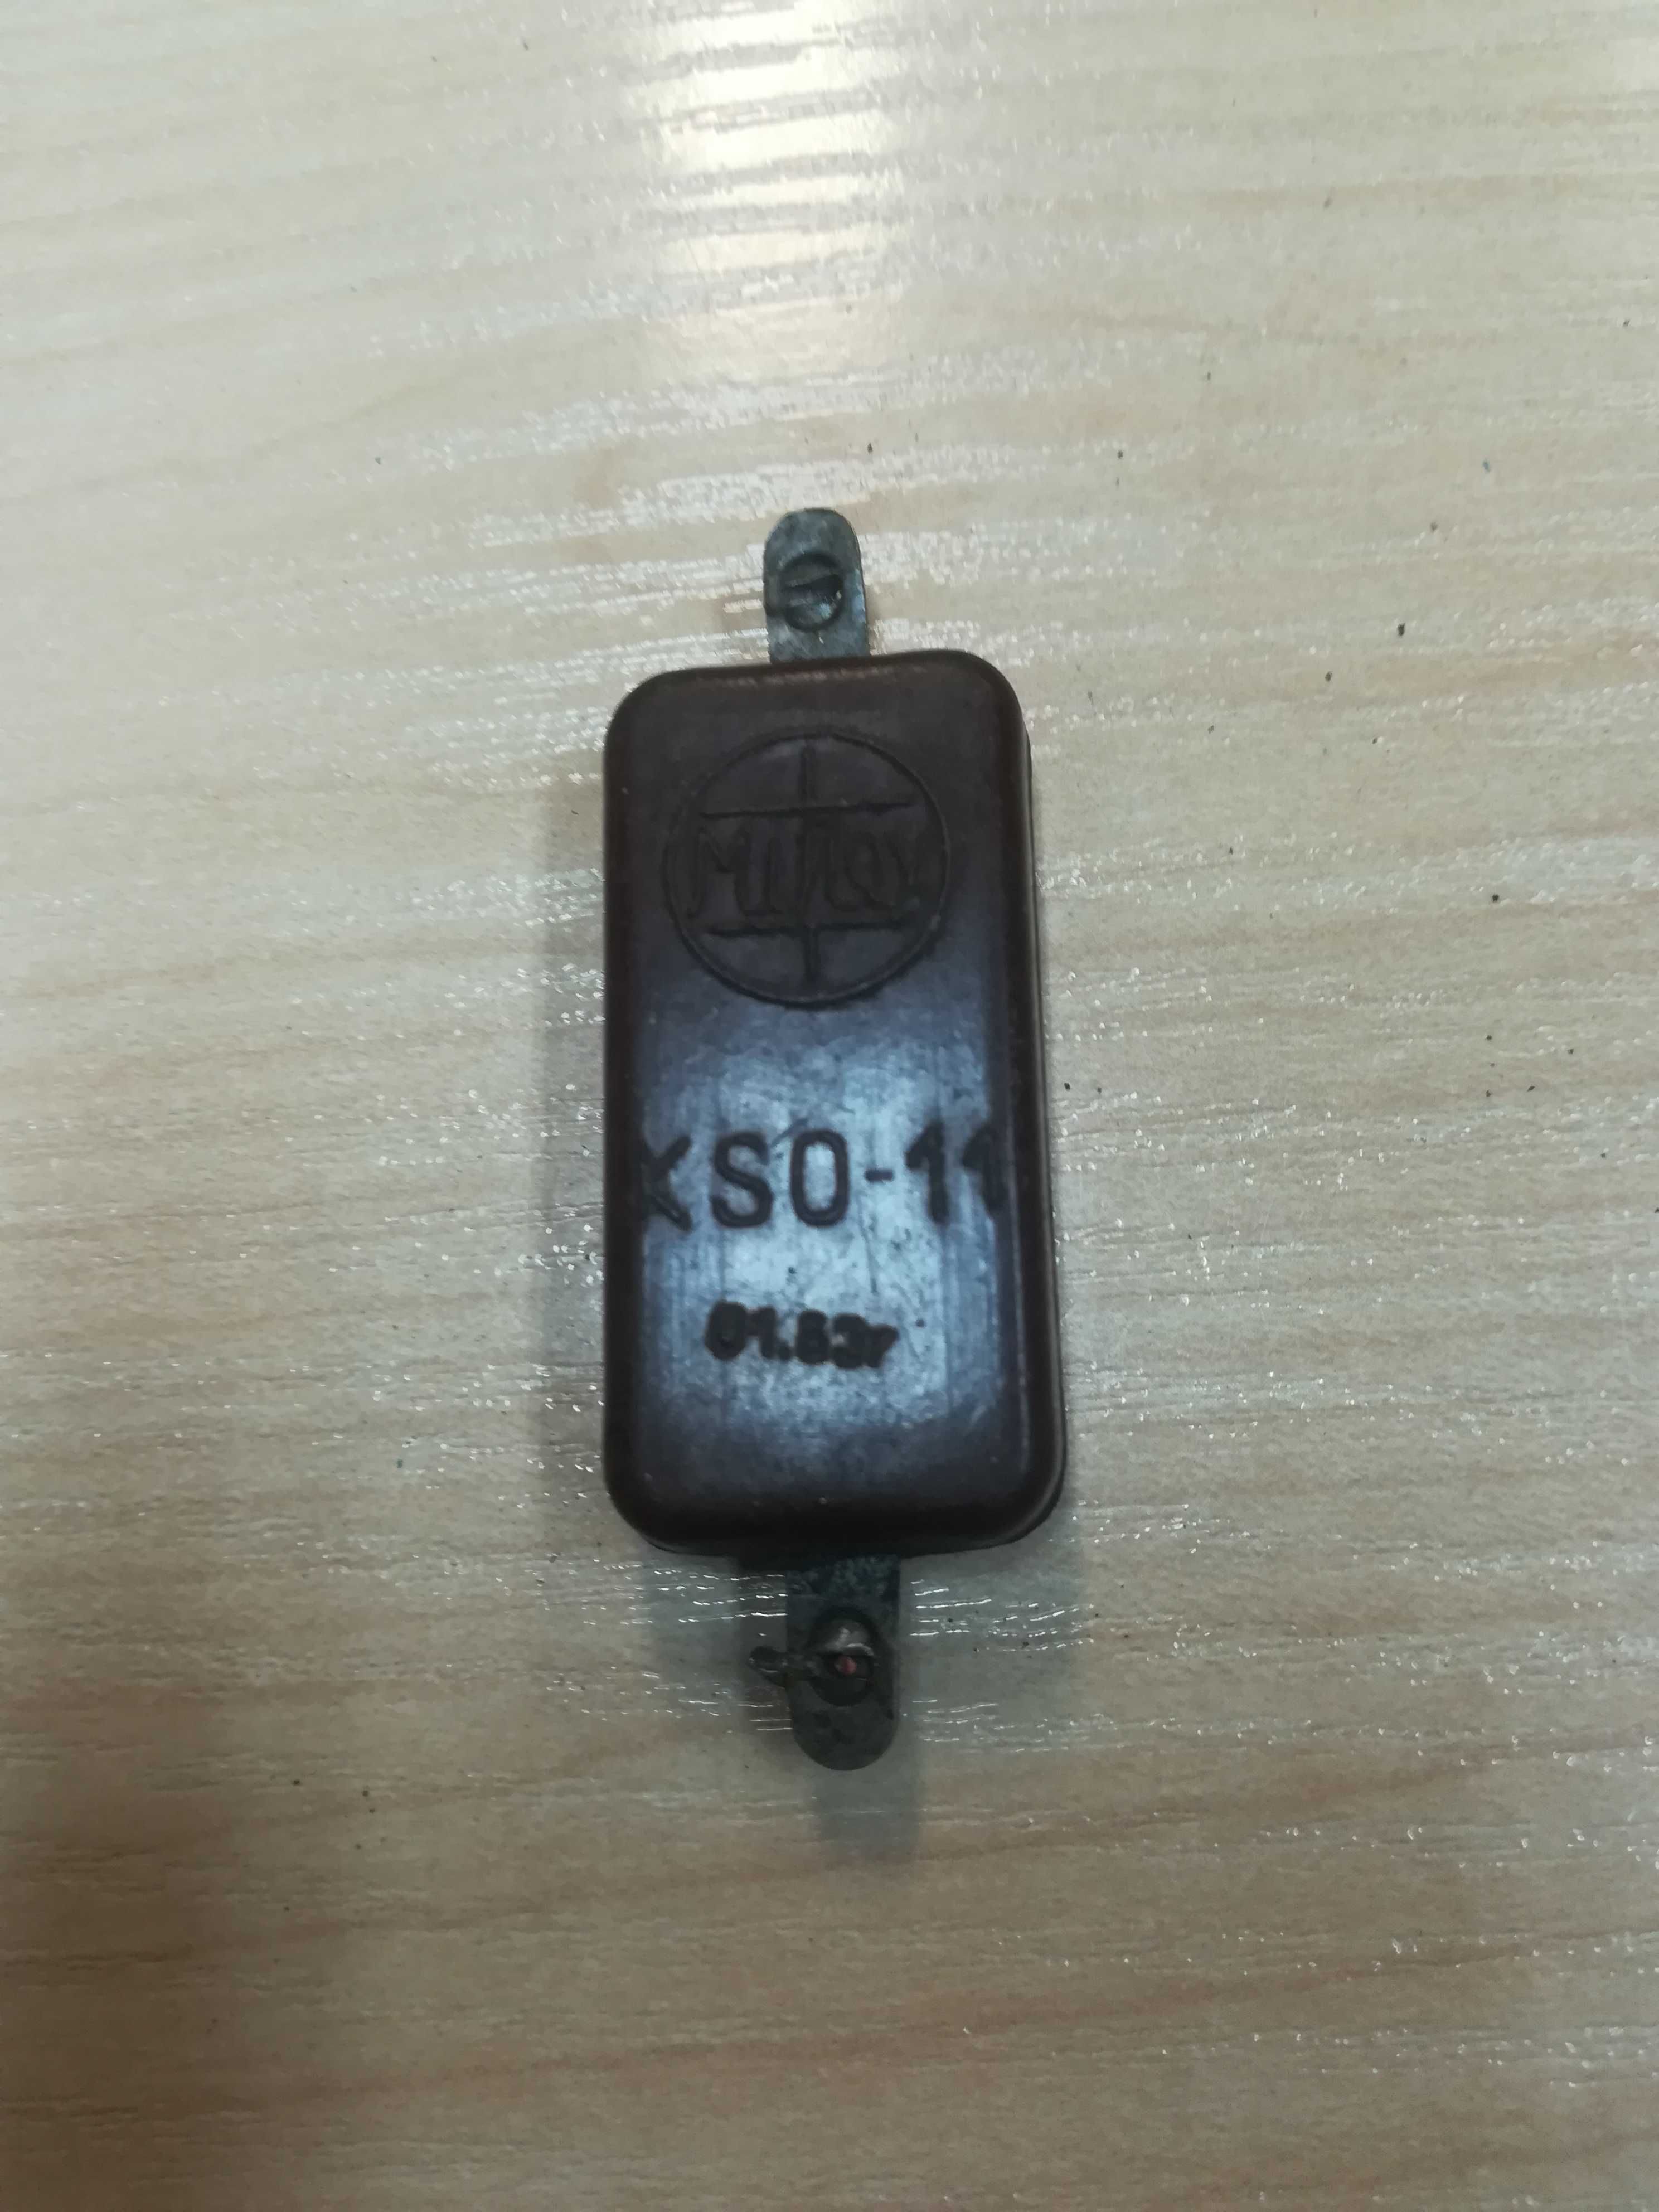 Stary kondensator MIFLEX mikowy 9100pF KSO-11 antyk